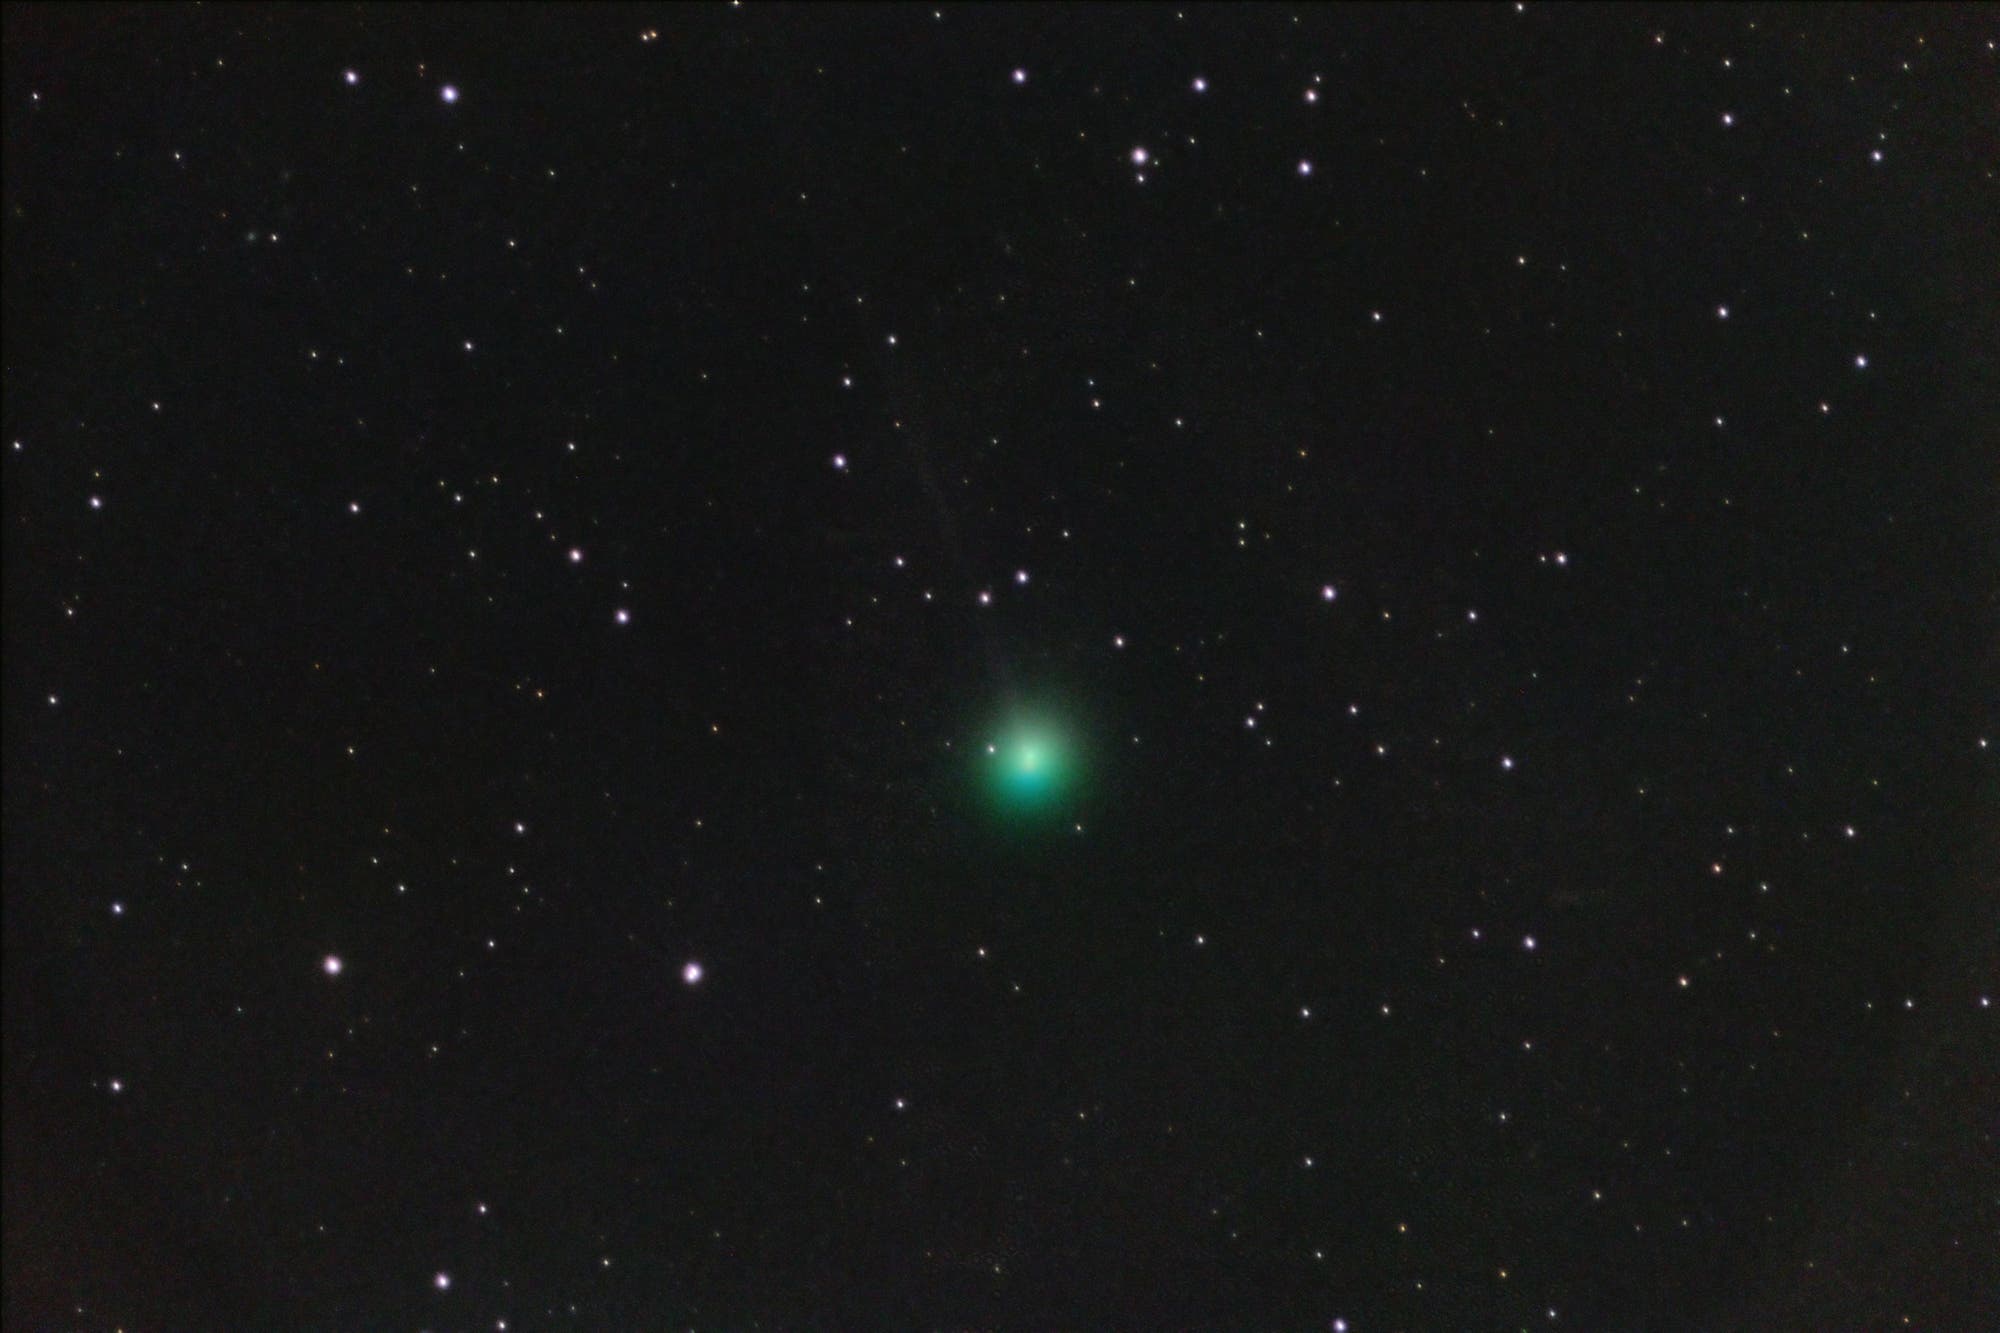 New comet C/2018 V1 Machholz-Fujikawa-Iwamoto